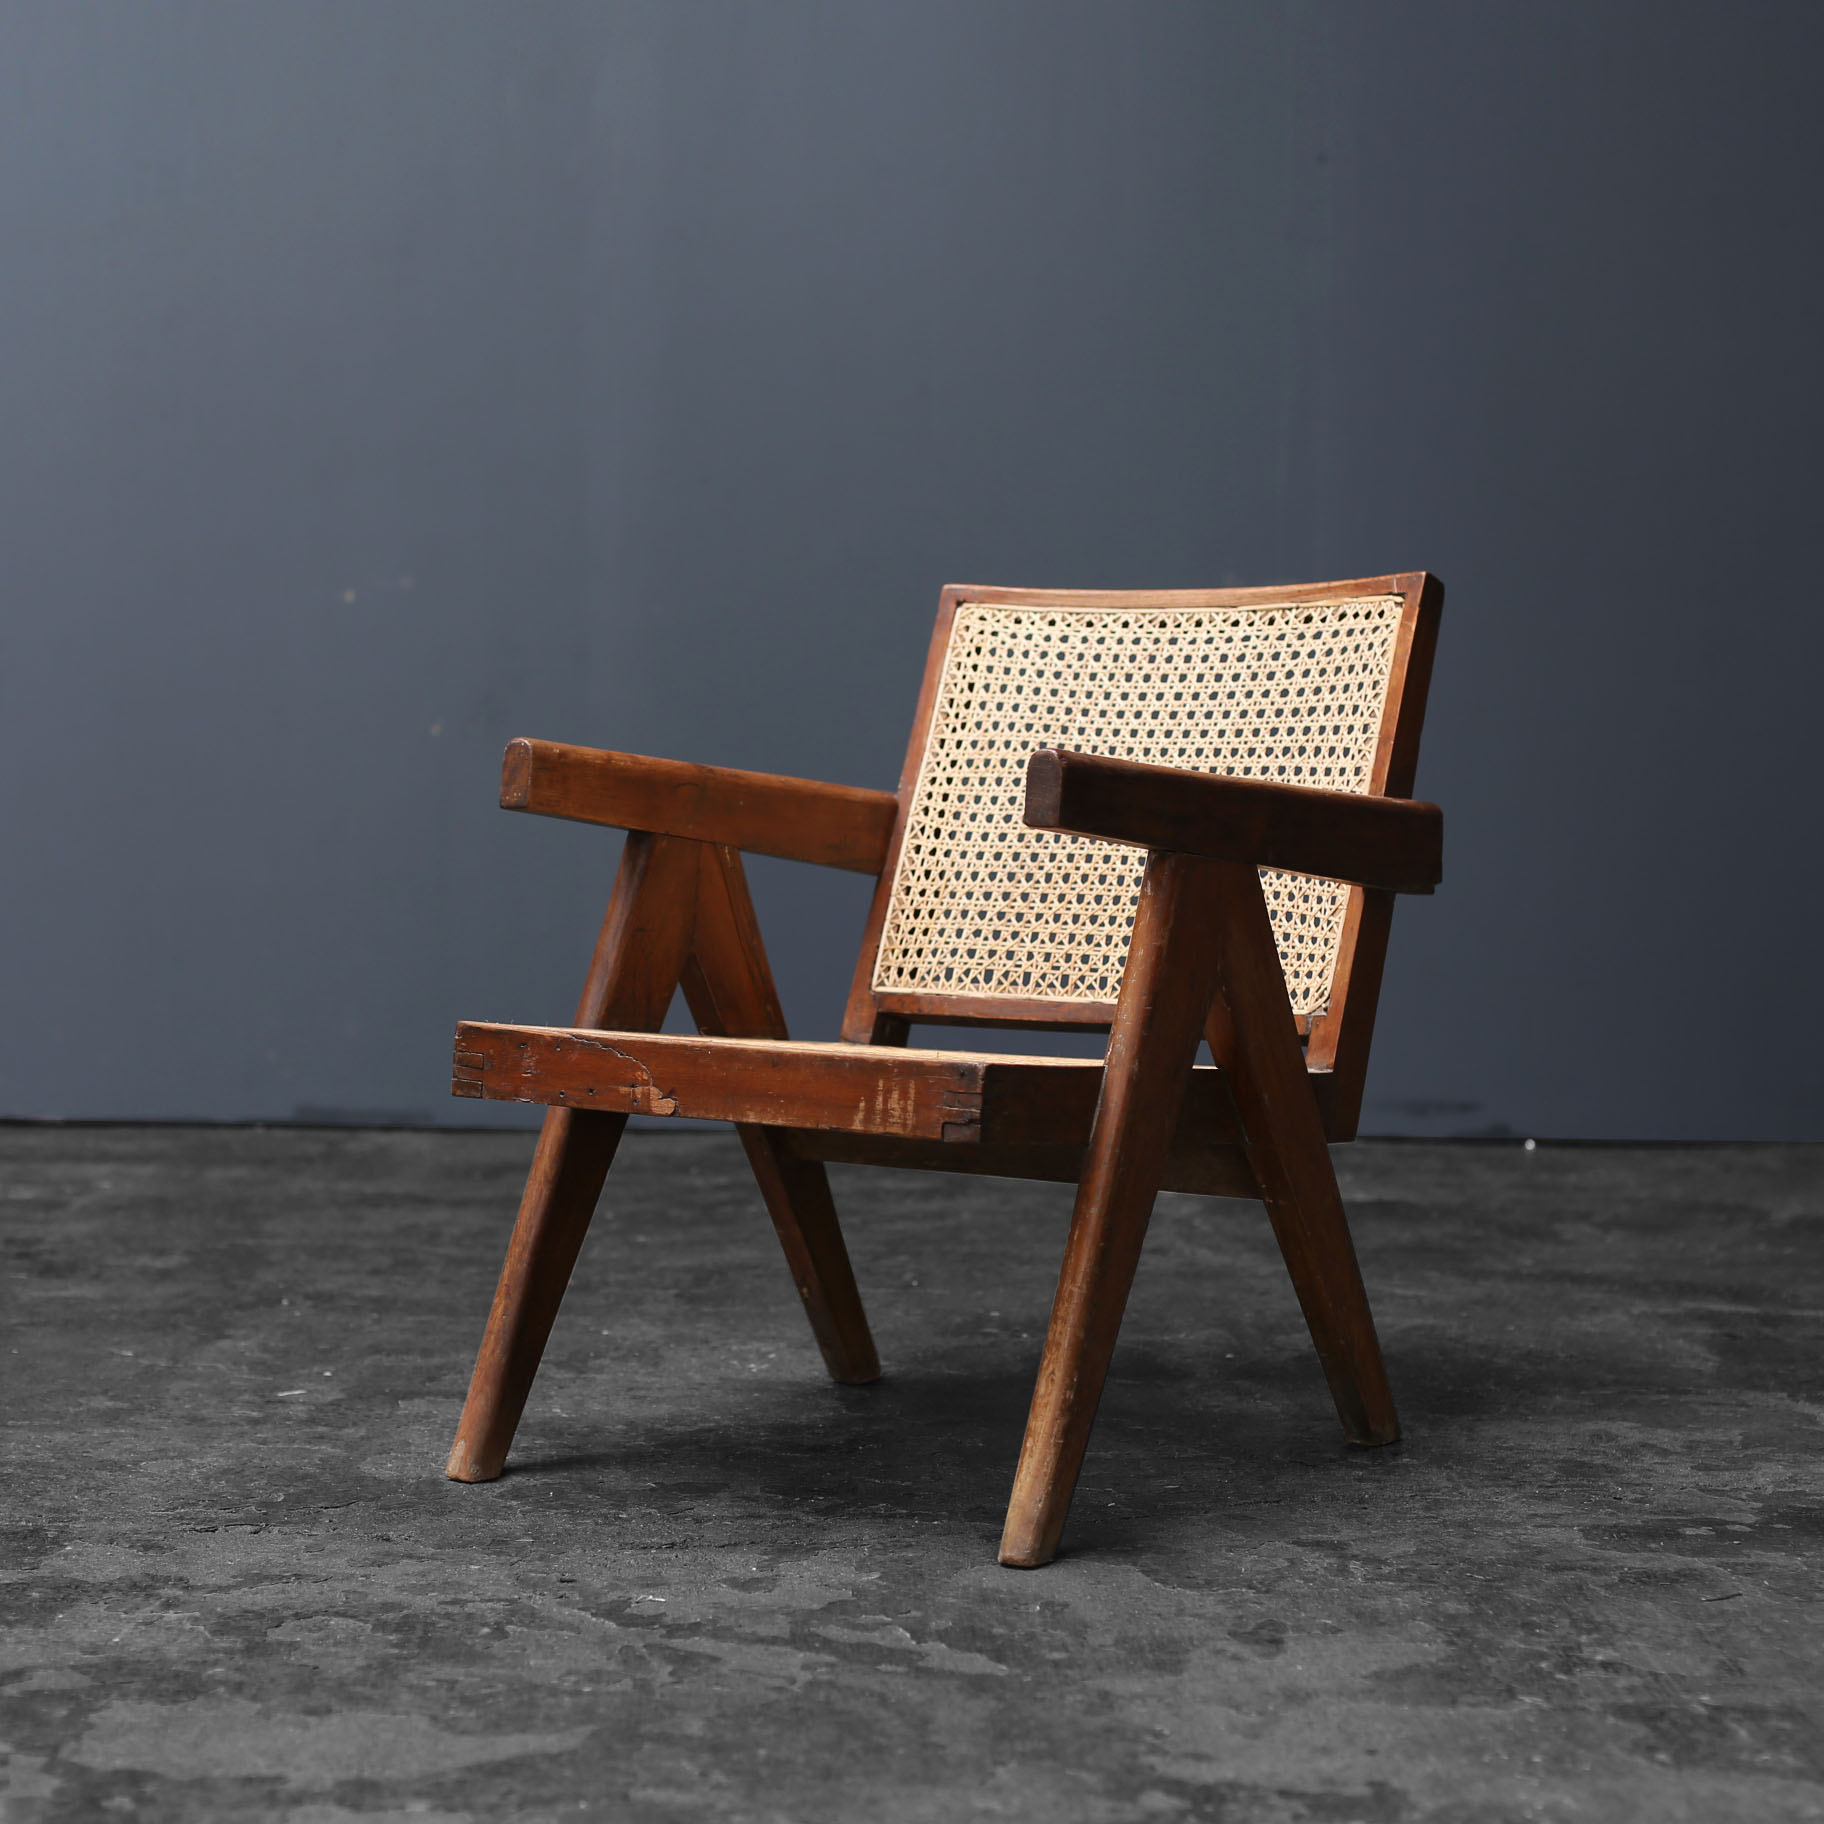 Easy Armchair by Pierre Jeanneret - Objet d' art